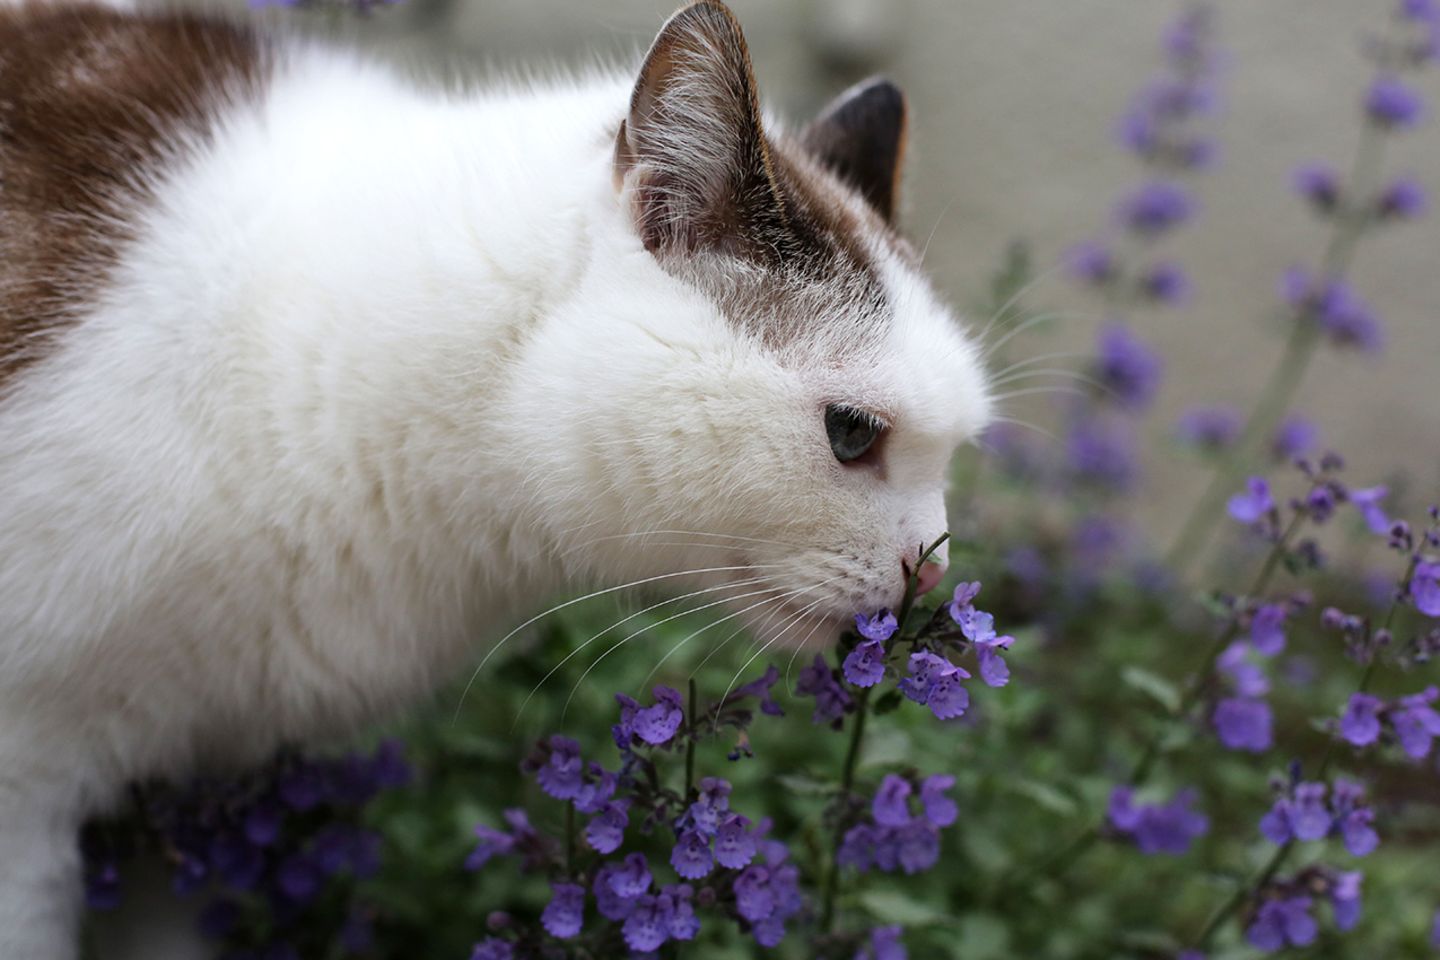 lieben die Pflanze - [GEO] Katzenminze: Katzen Warum